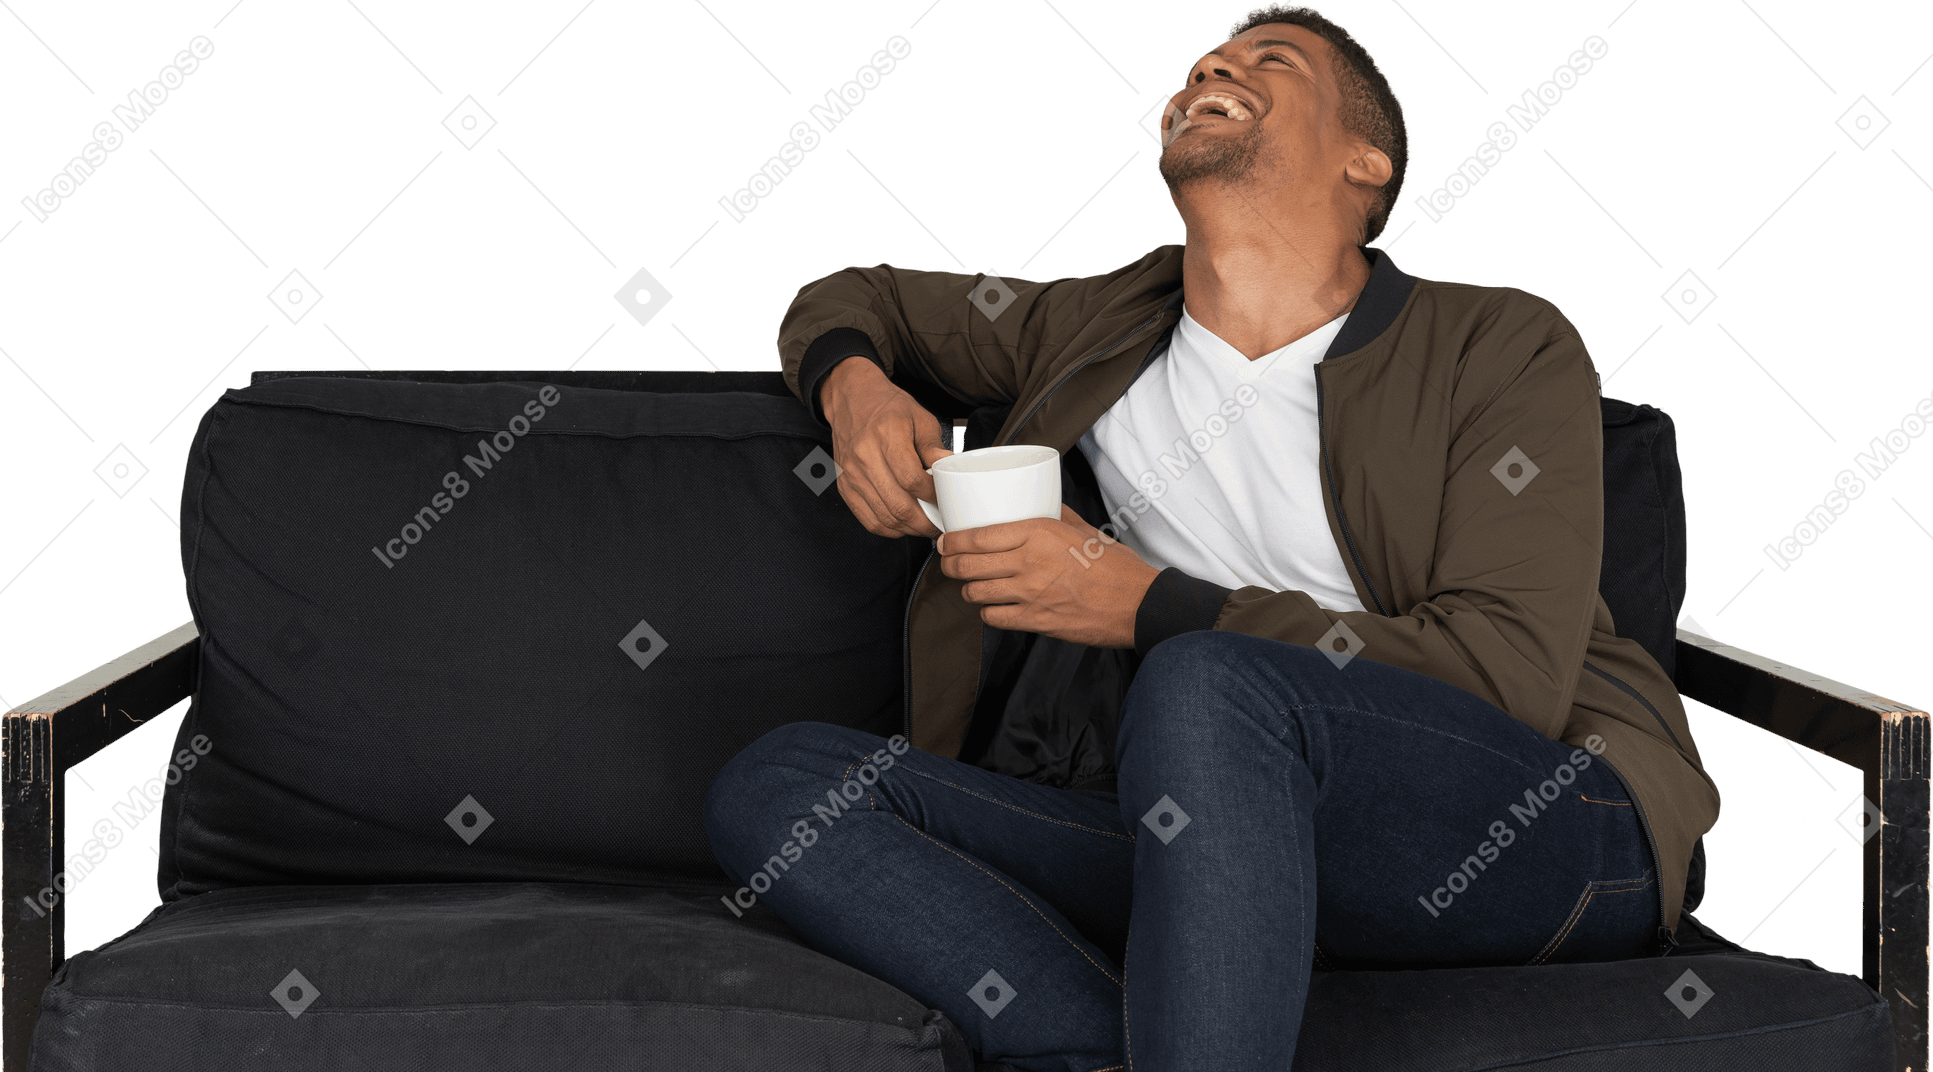 Vorderansicht eines lächelnden jungen mannes, der mit einer tasse kaffee auf einem sofa sitzt